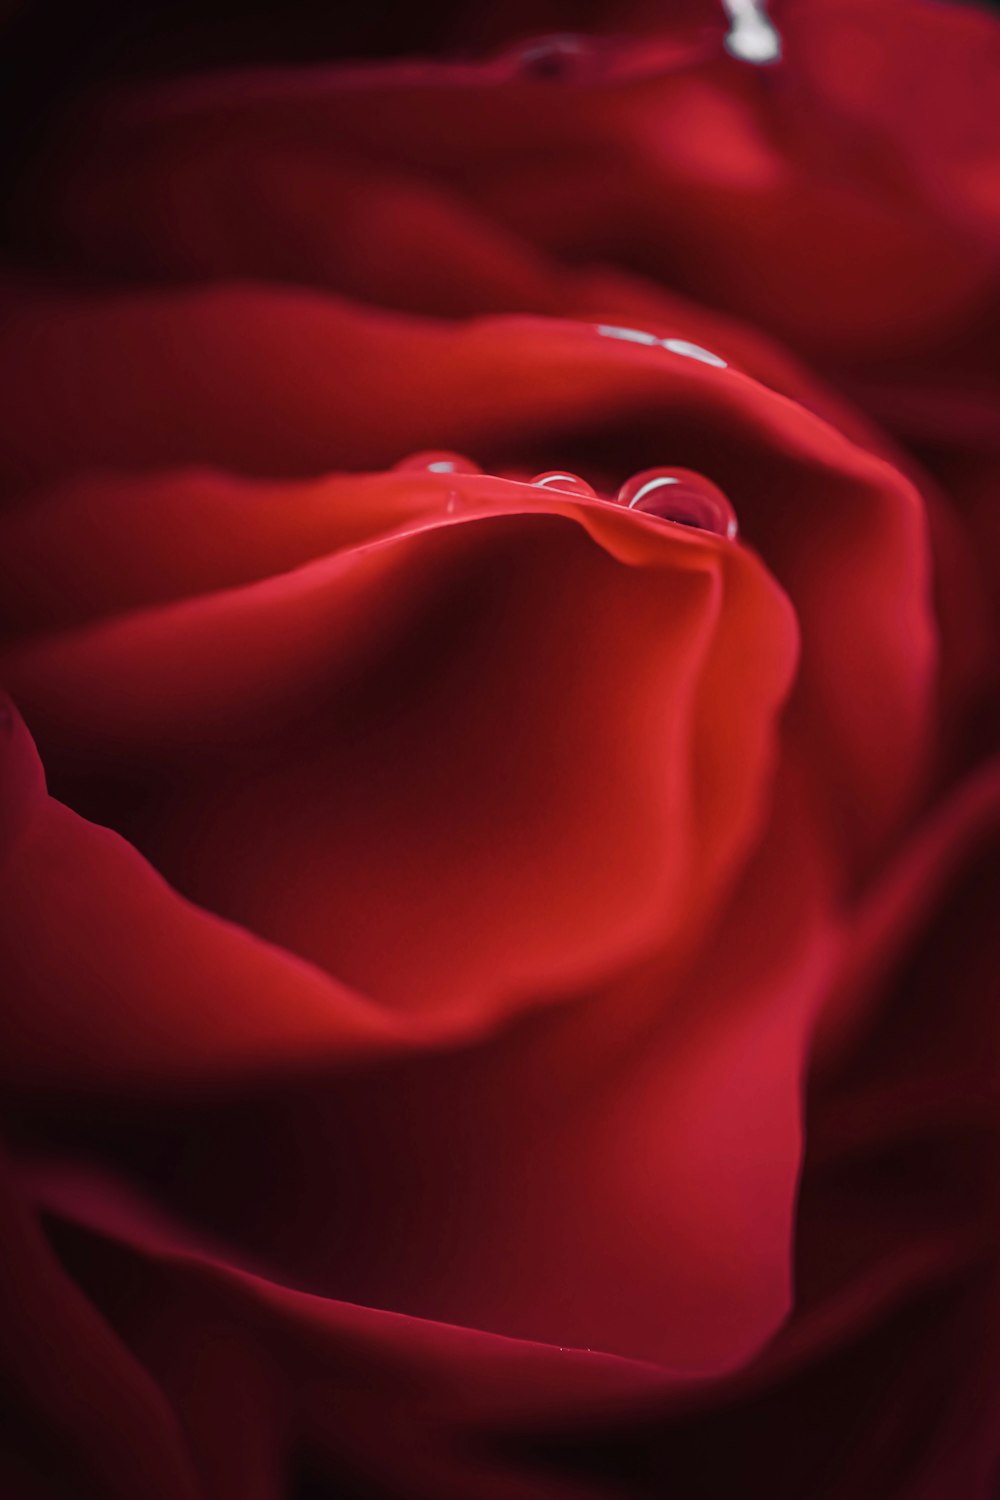 rosa rossa in primo piano fotografia